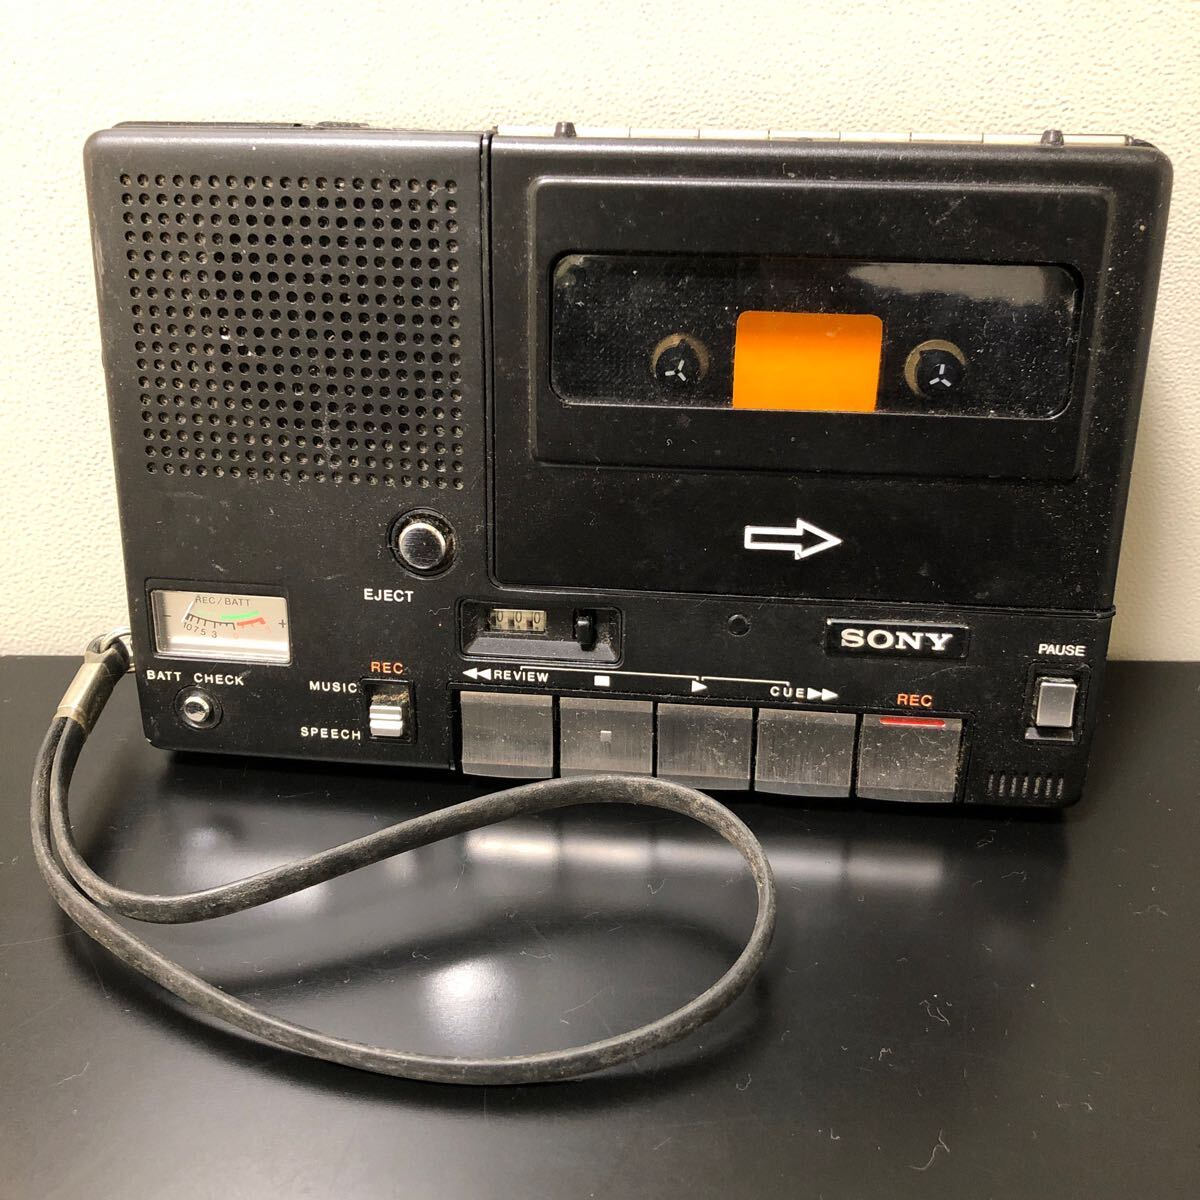 S 3P SONY CASSETTE-CORDER TC-1100B ソニー カセットレコーダー カセットテープレコーダー BLACK ブラック 黒 オーディオ機器 現状品_画像1